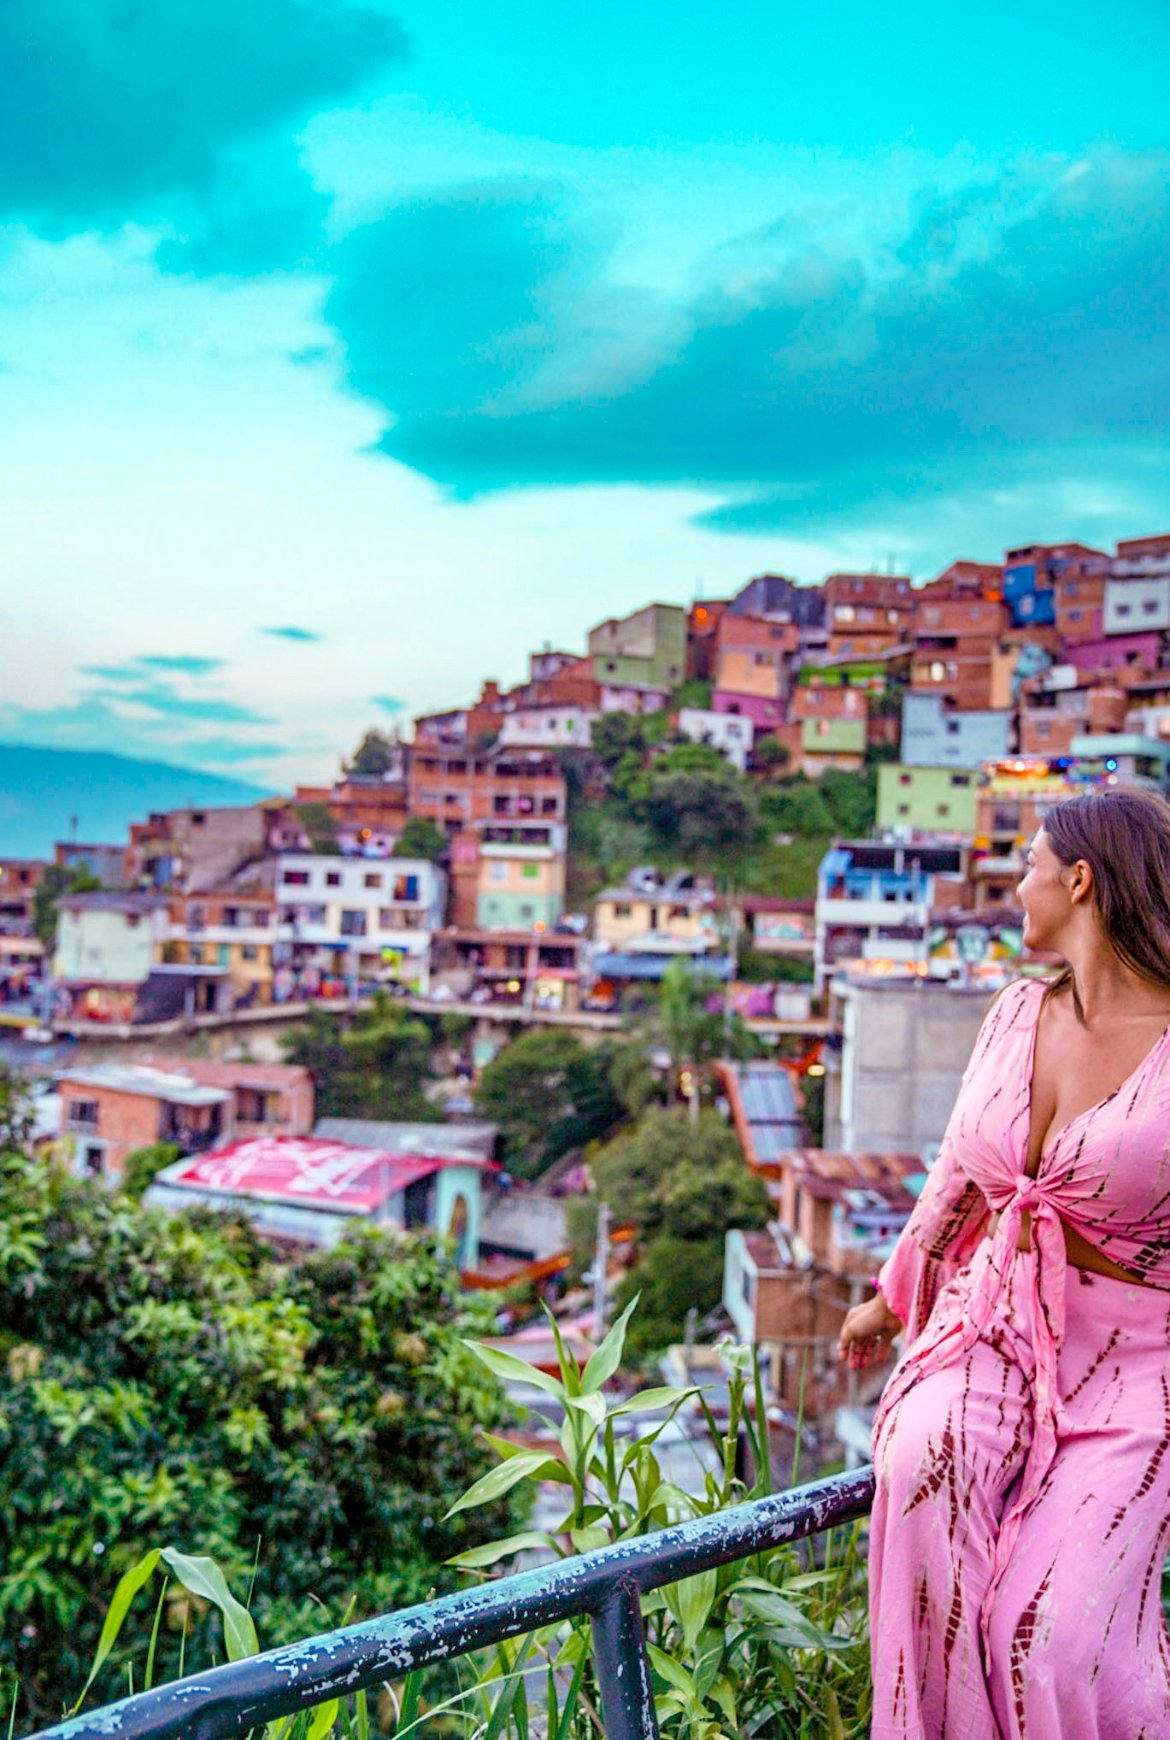 Comuna 13 Medellin views